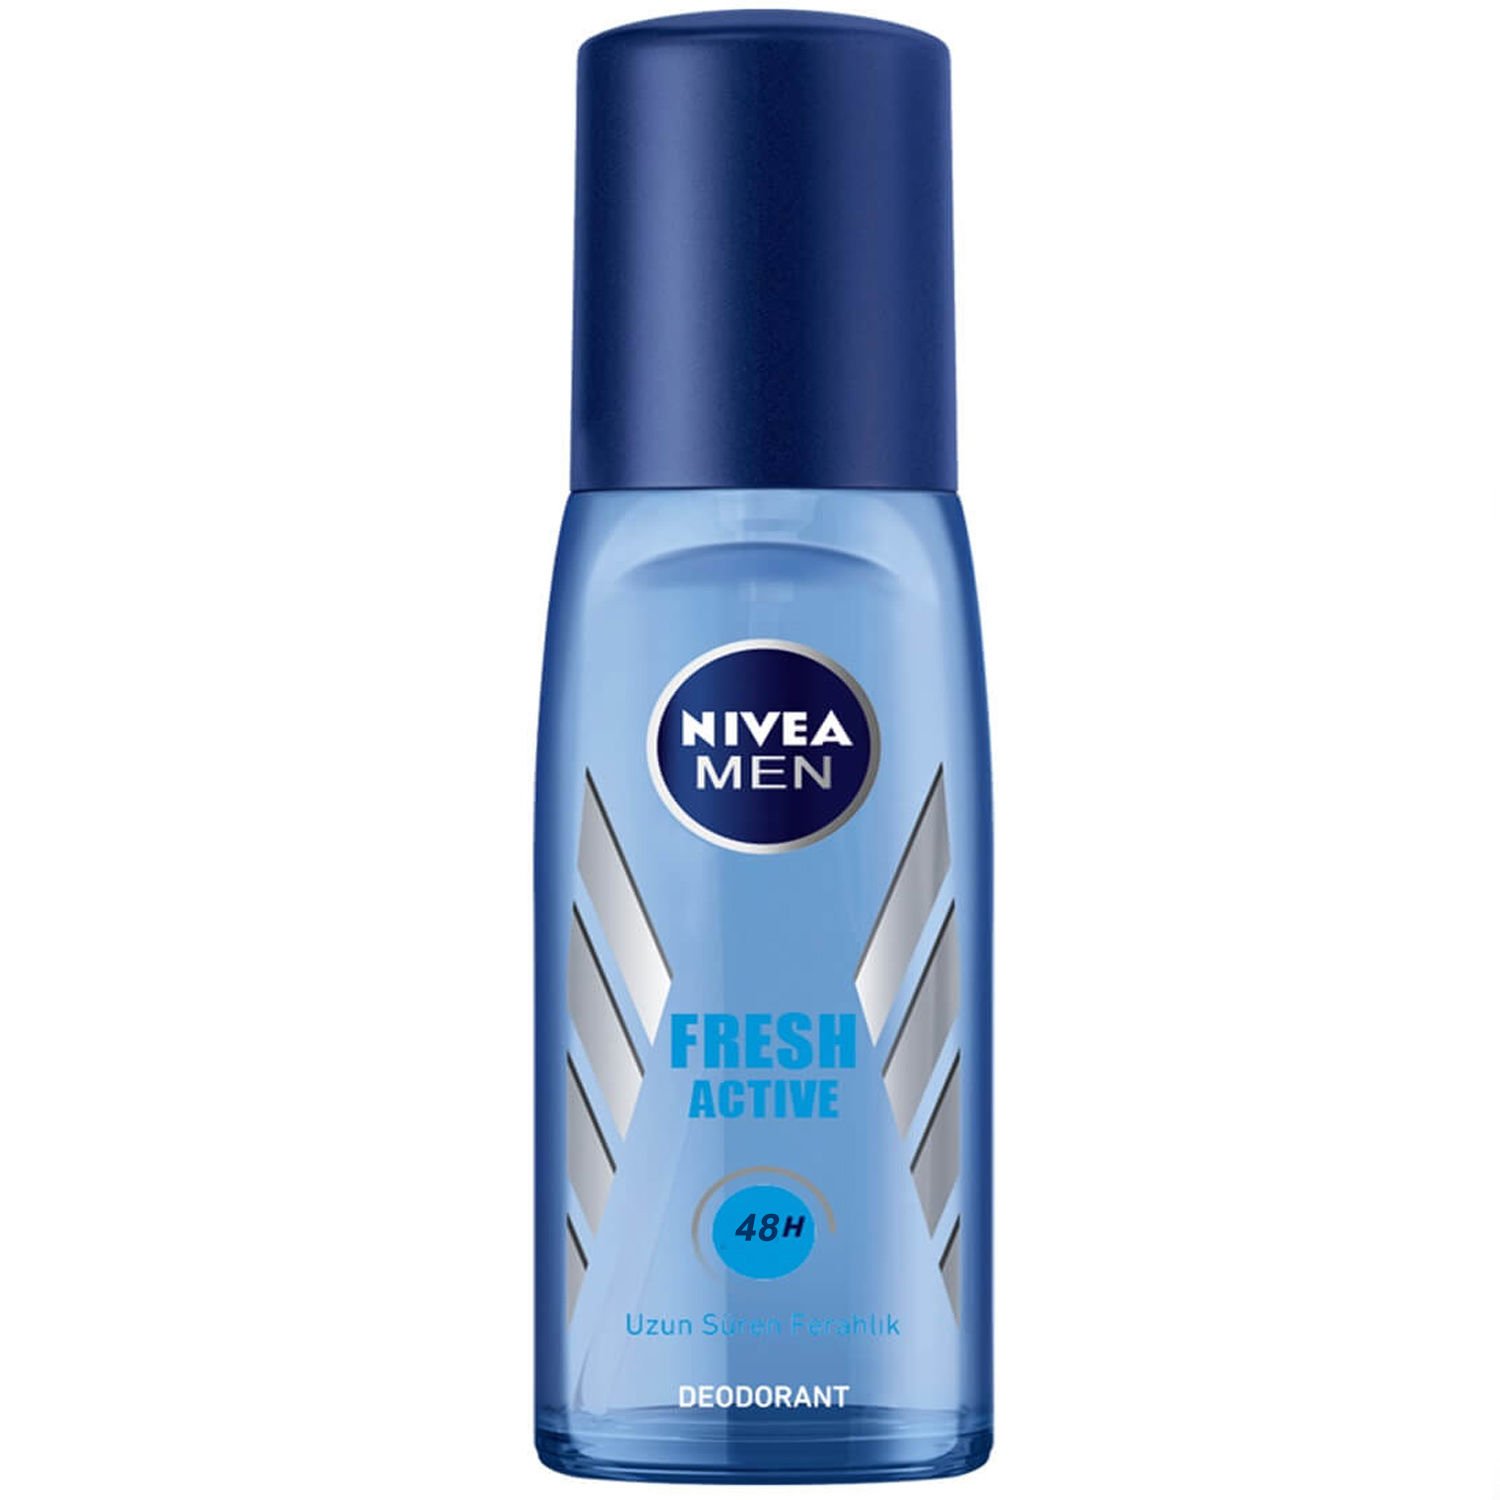 Nivea Men Fresh Active Erkek Deodorant Pump Sprey 75 ml